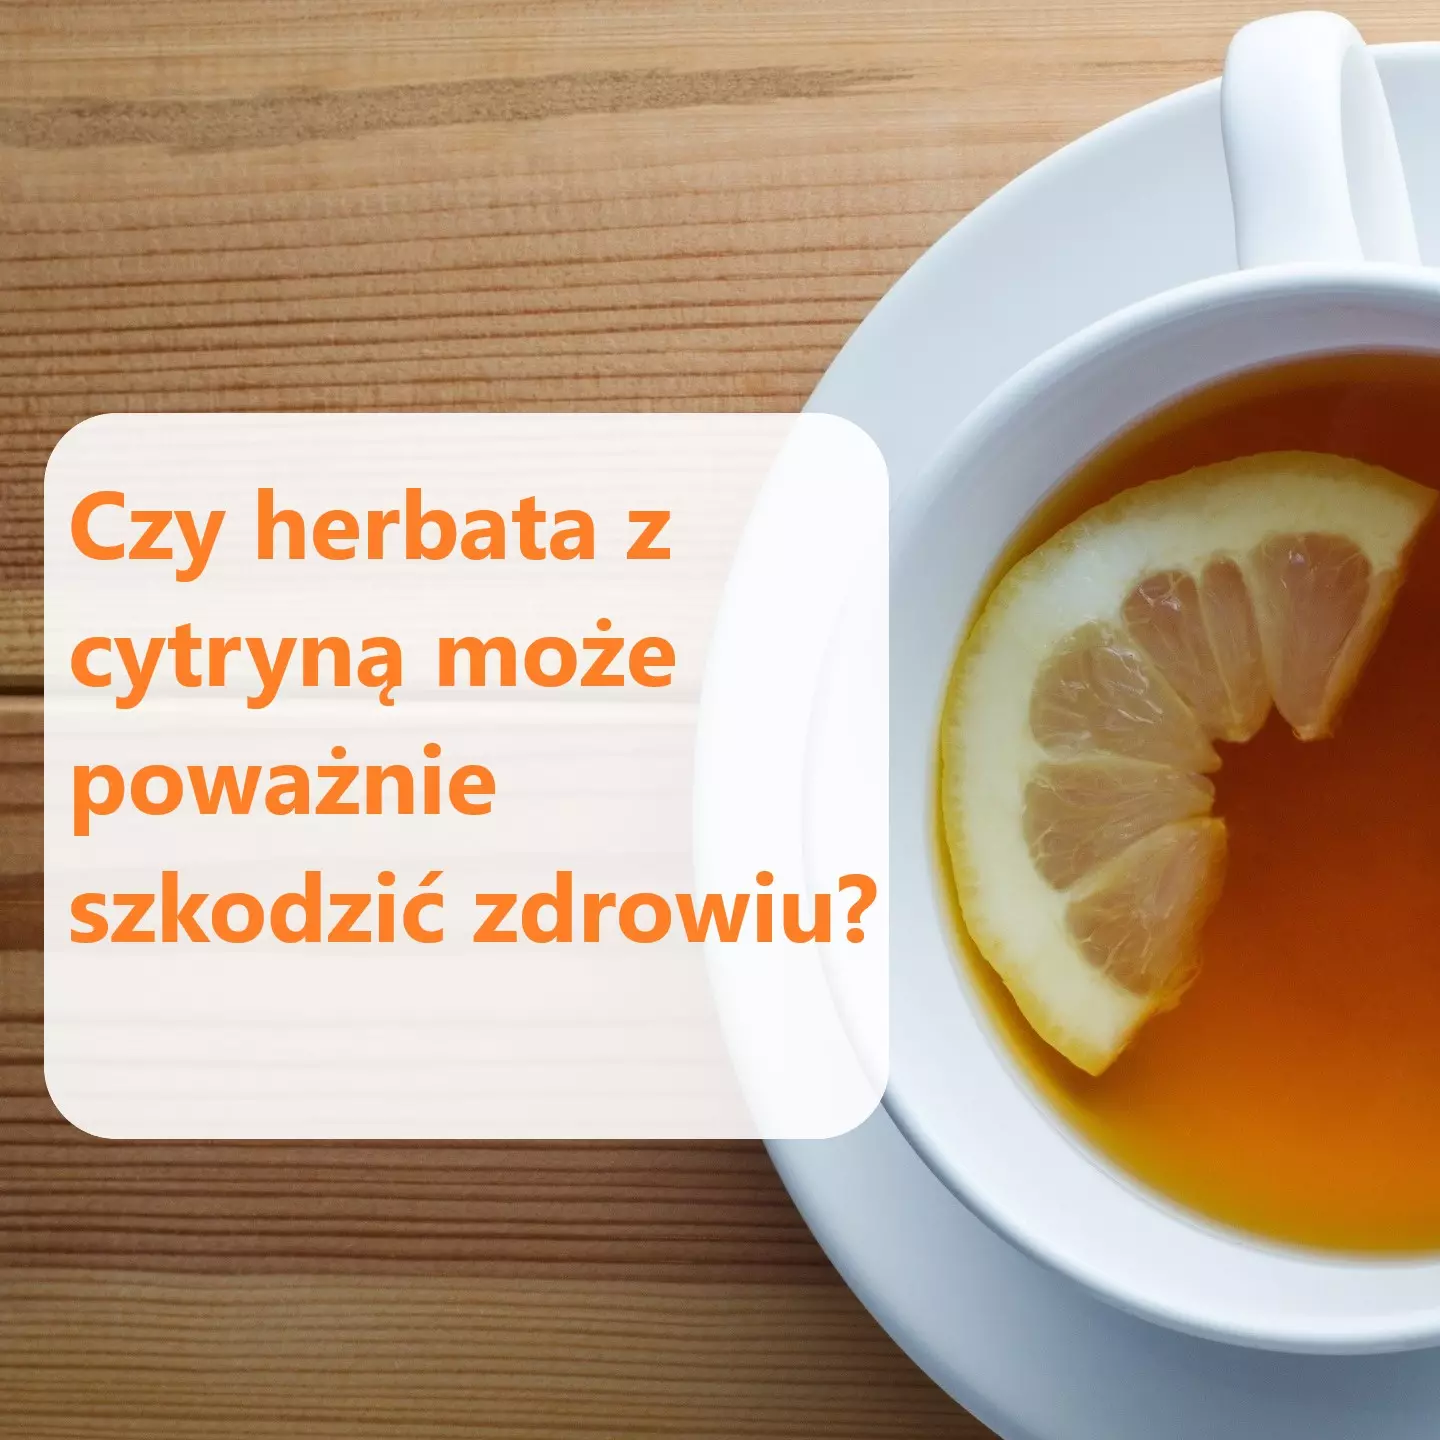 Czy herbata z cytryną jest szkodliwa?